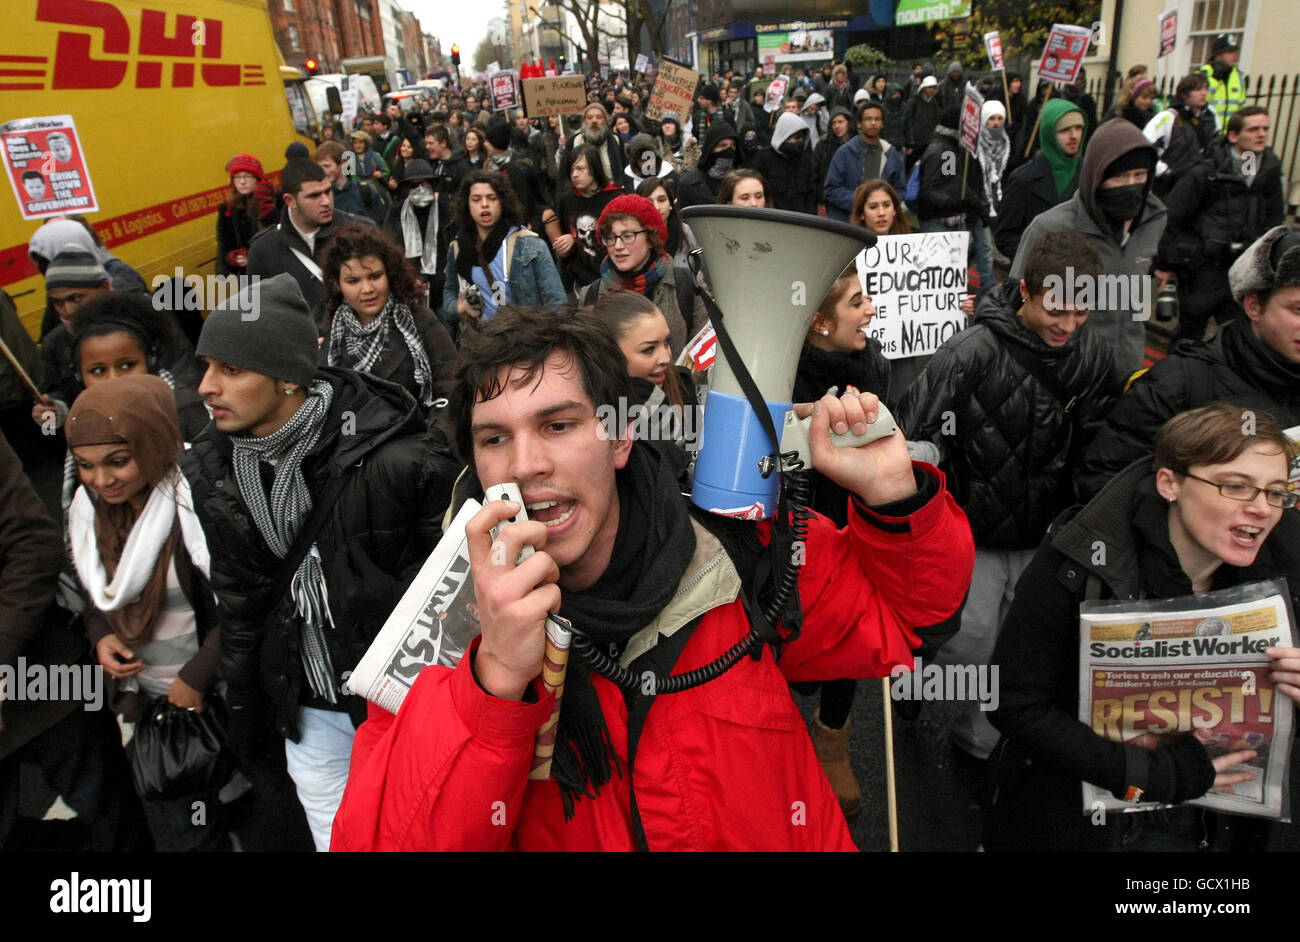 Mark Bergfeld vom Education Activist Network führt eine Demonstration gegen die vorgeschlagene Erhöhung der Studiengebühren im Zentrum von London an. Stockfoto